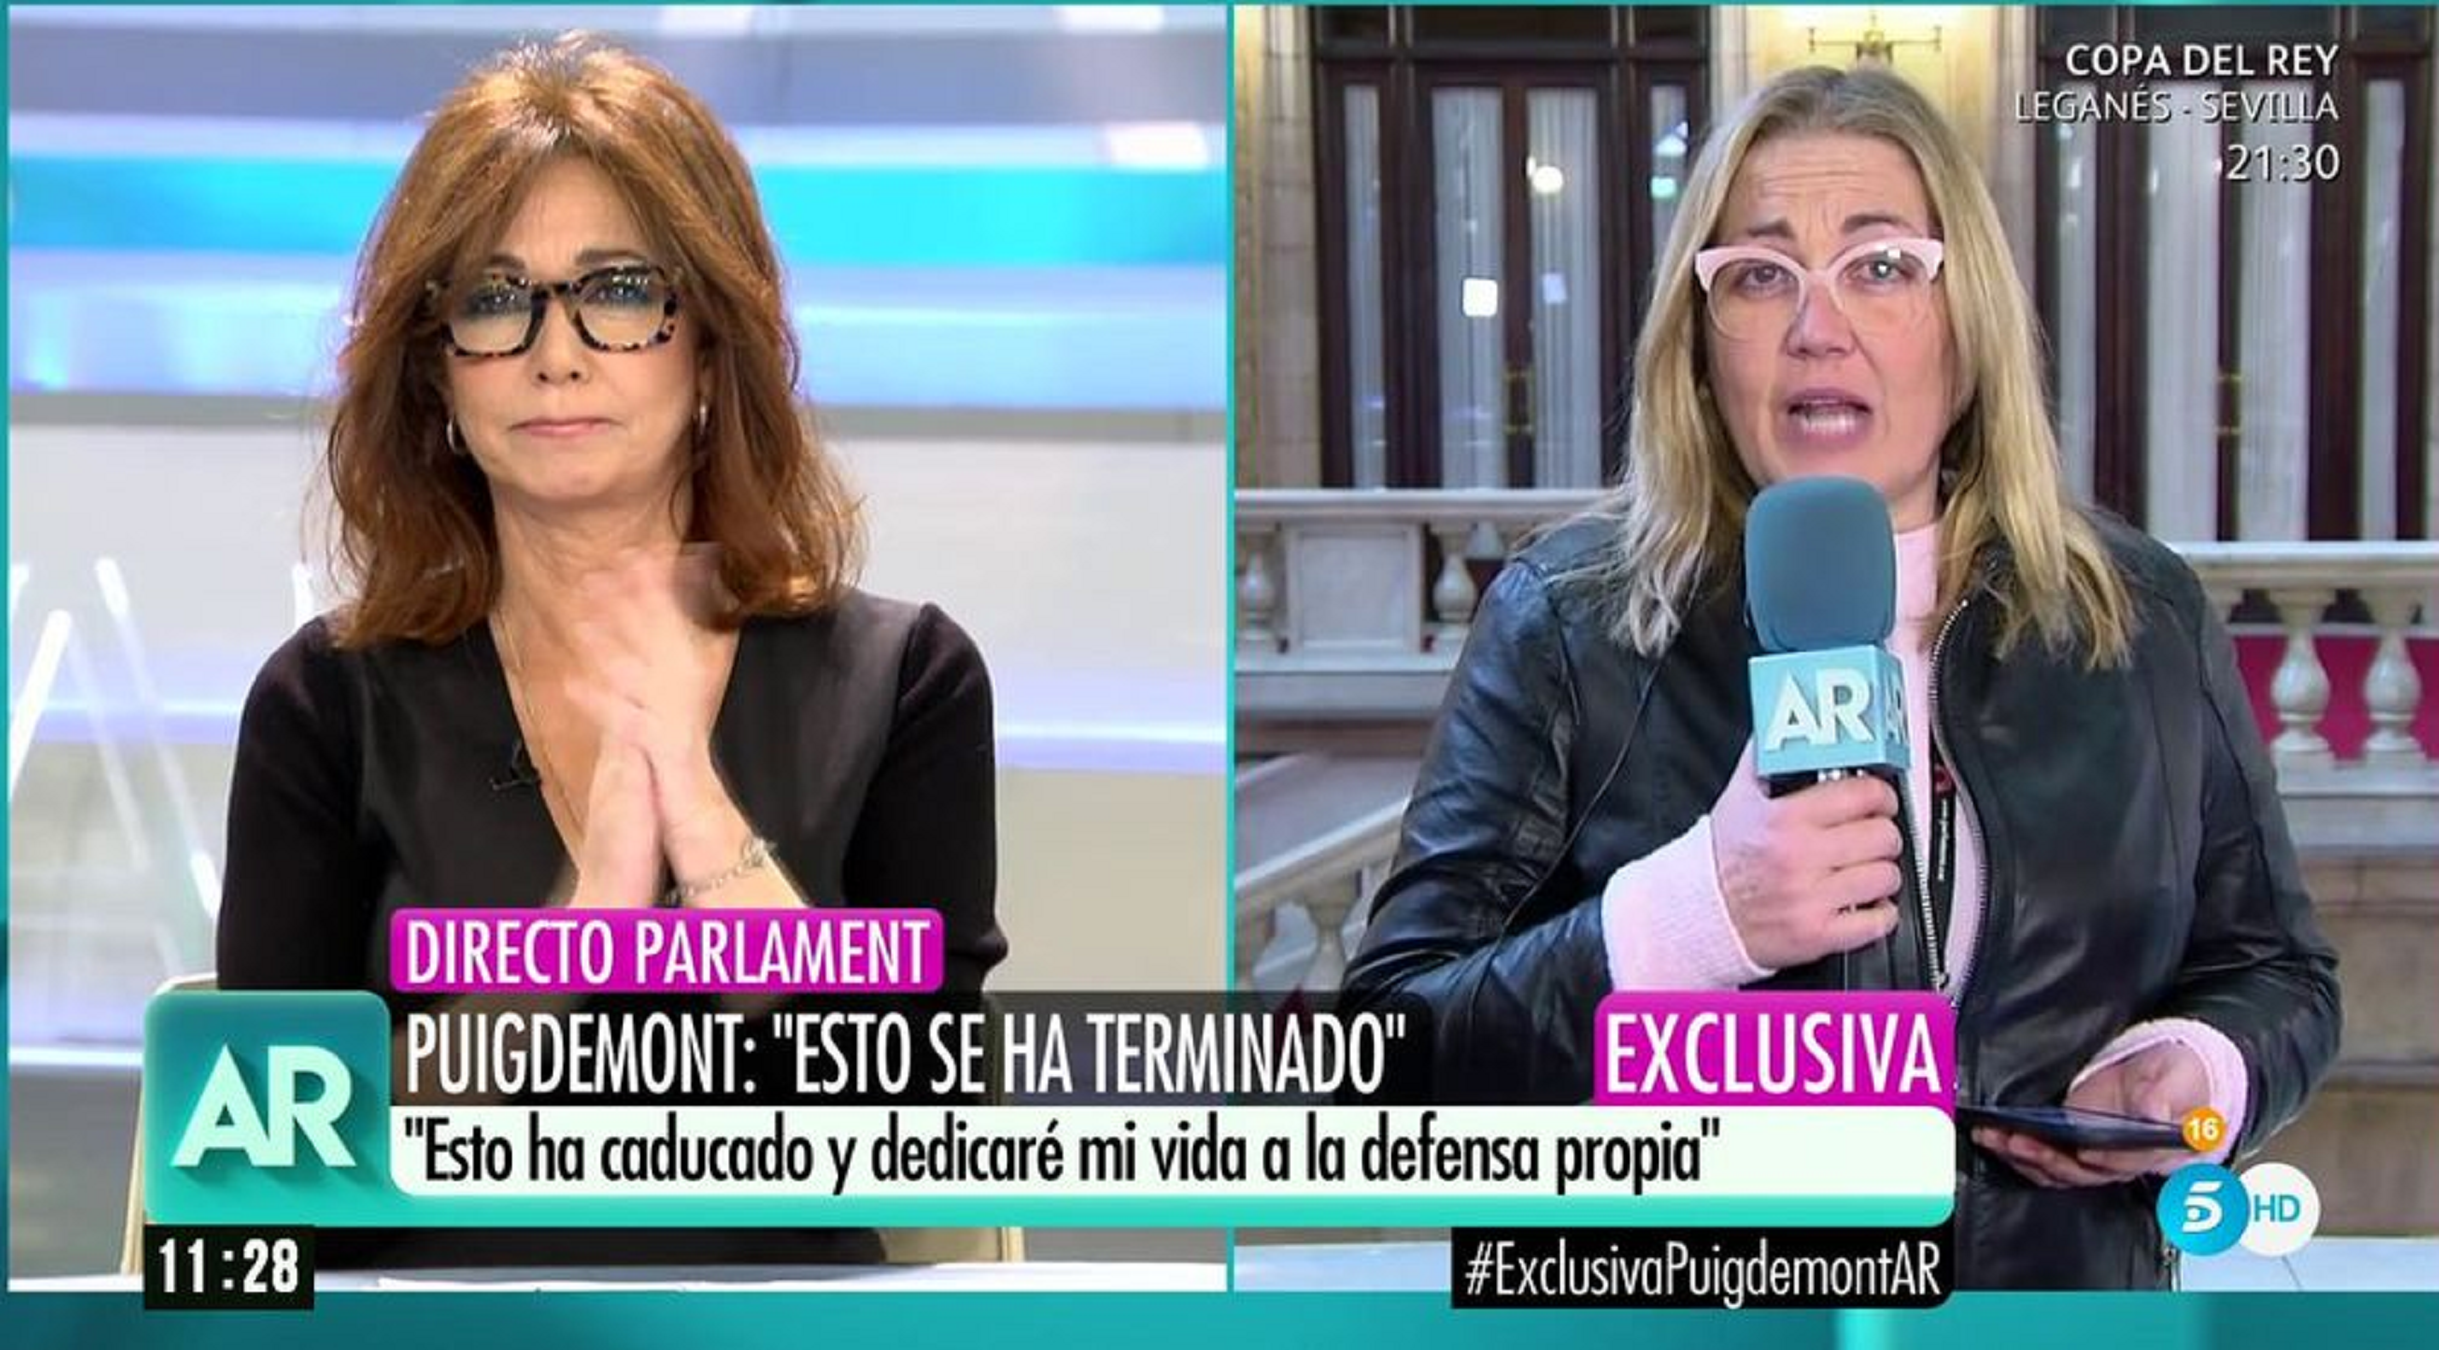 La agresiva campaña de Ana Rosa anti-Puigdemont, día a día